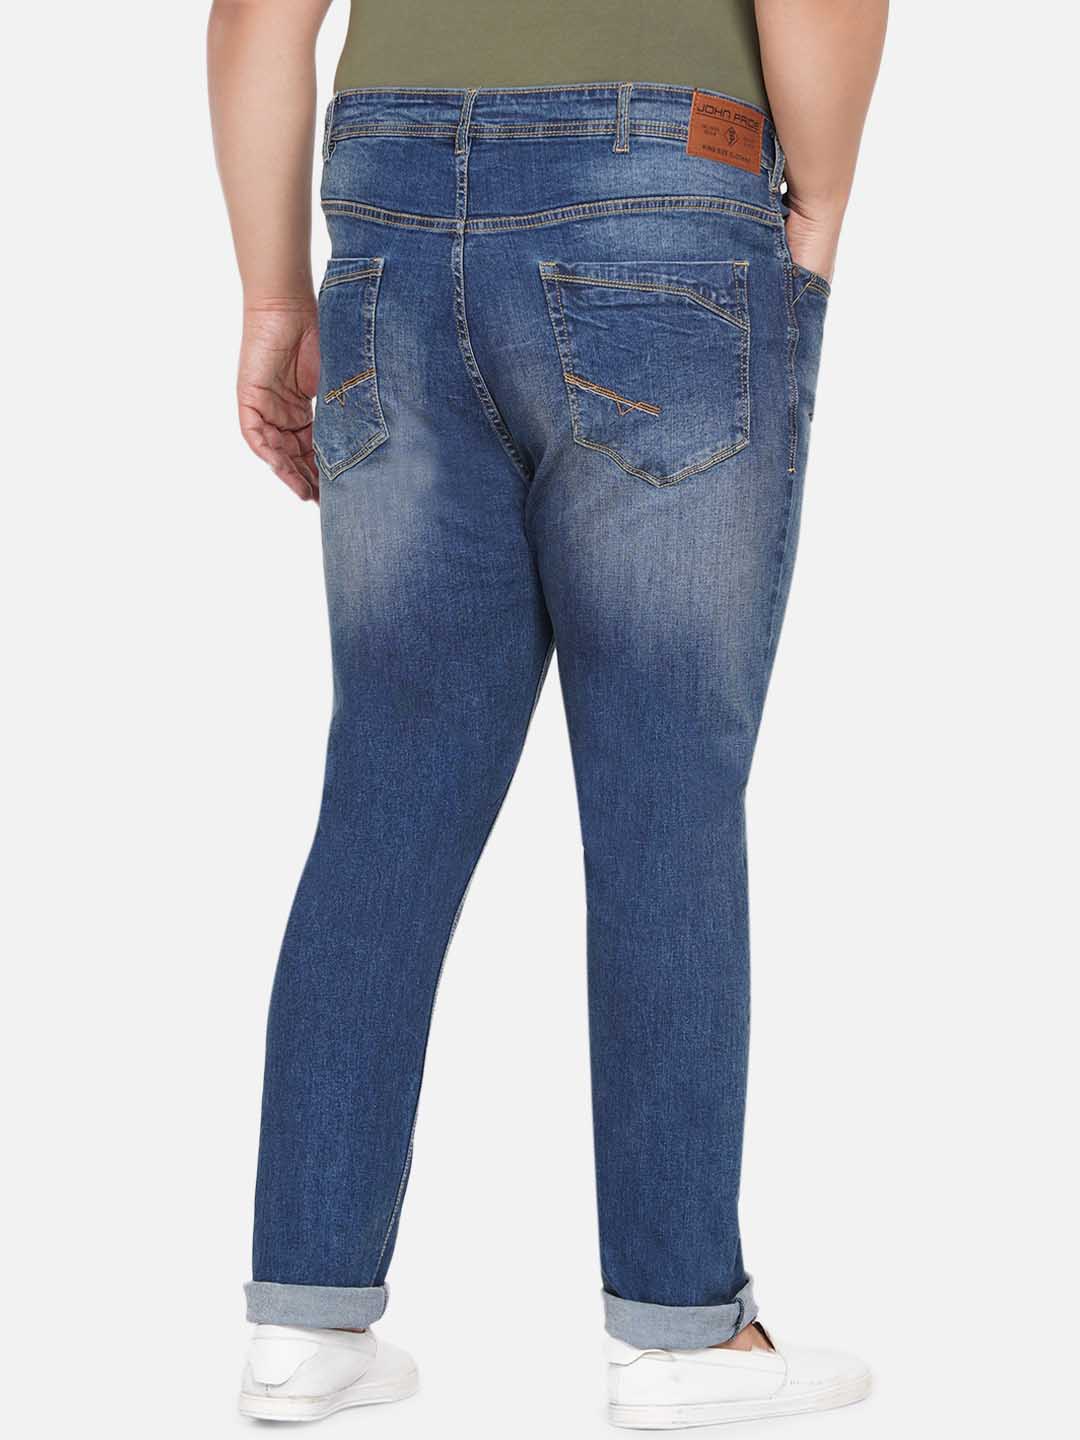 bottomwear/jeans/EJPJ25044/ejpj25044-5.jpg